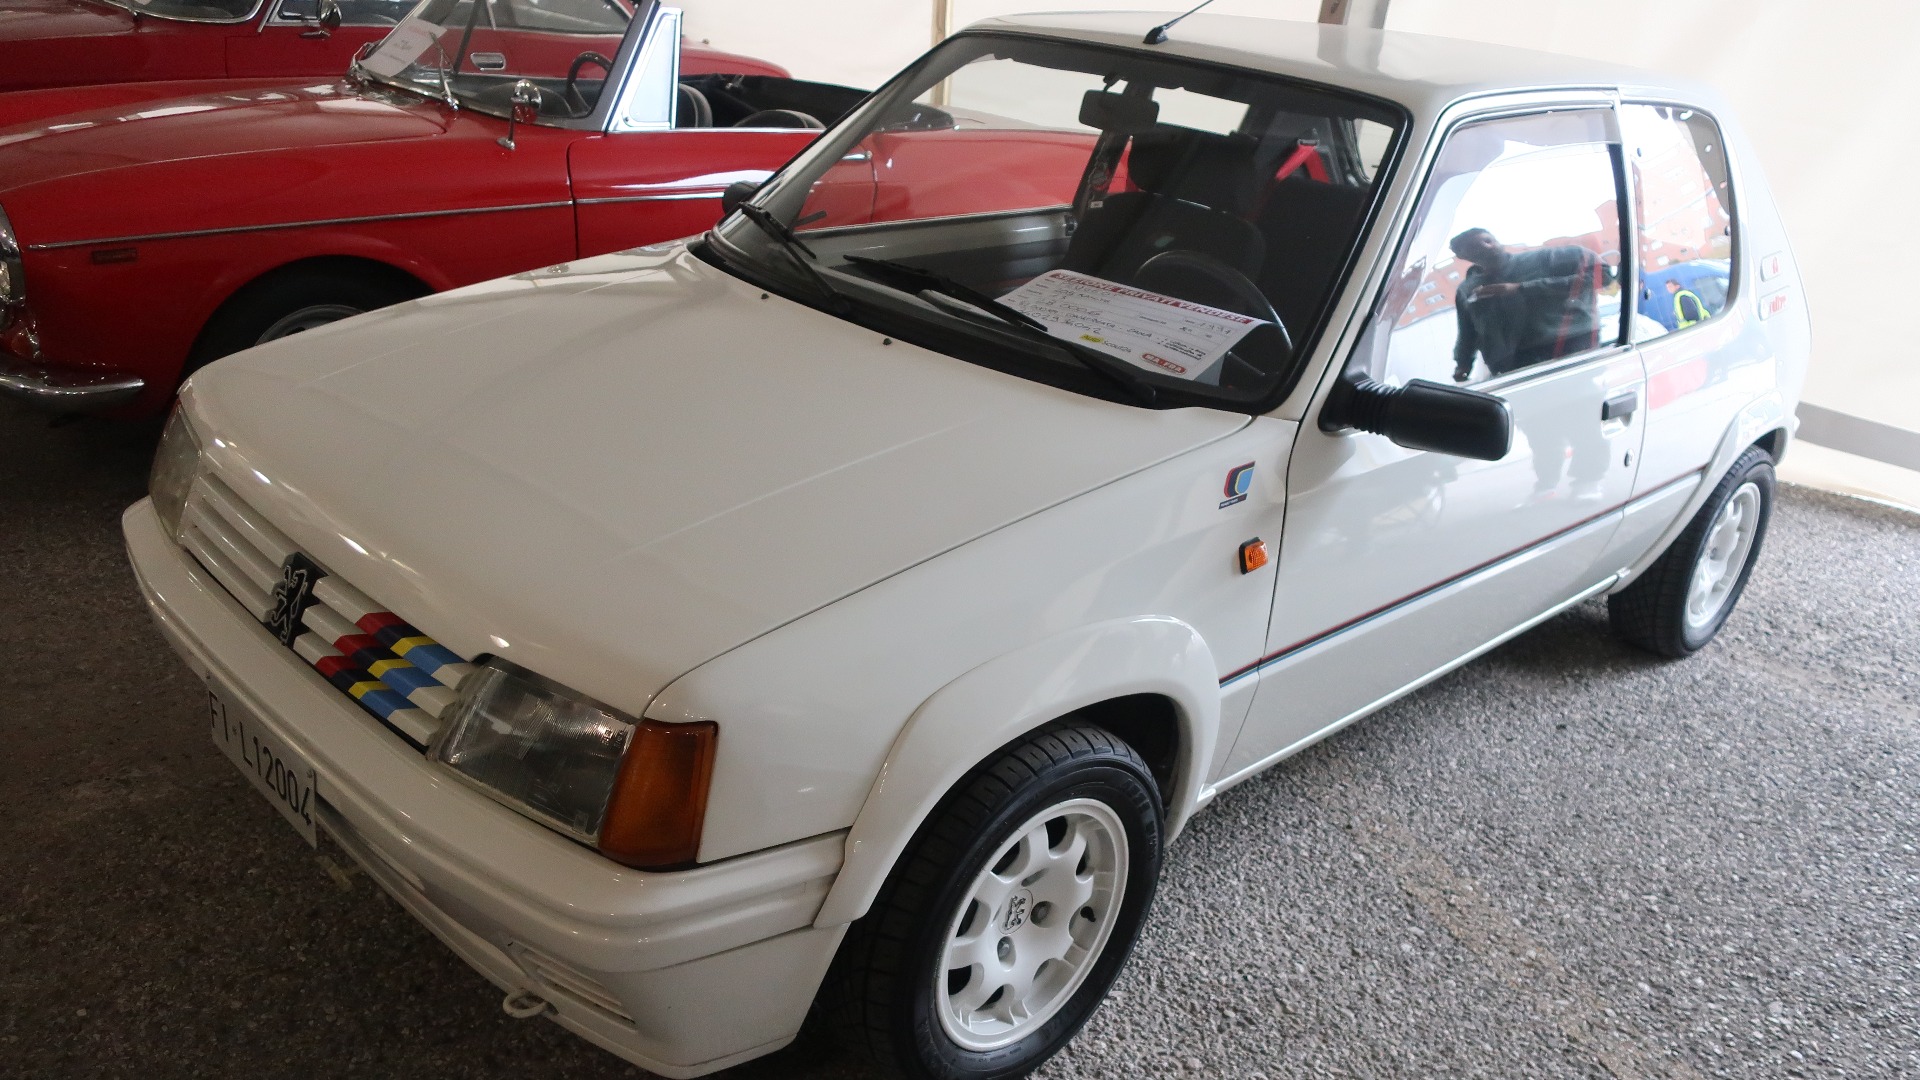 En ordentlig godbit. 1991 Peugeot 205 Rallye til salgs for 28.000 Euro.